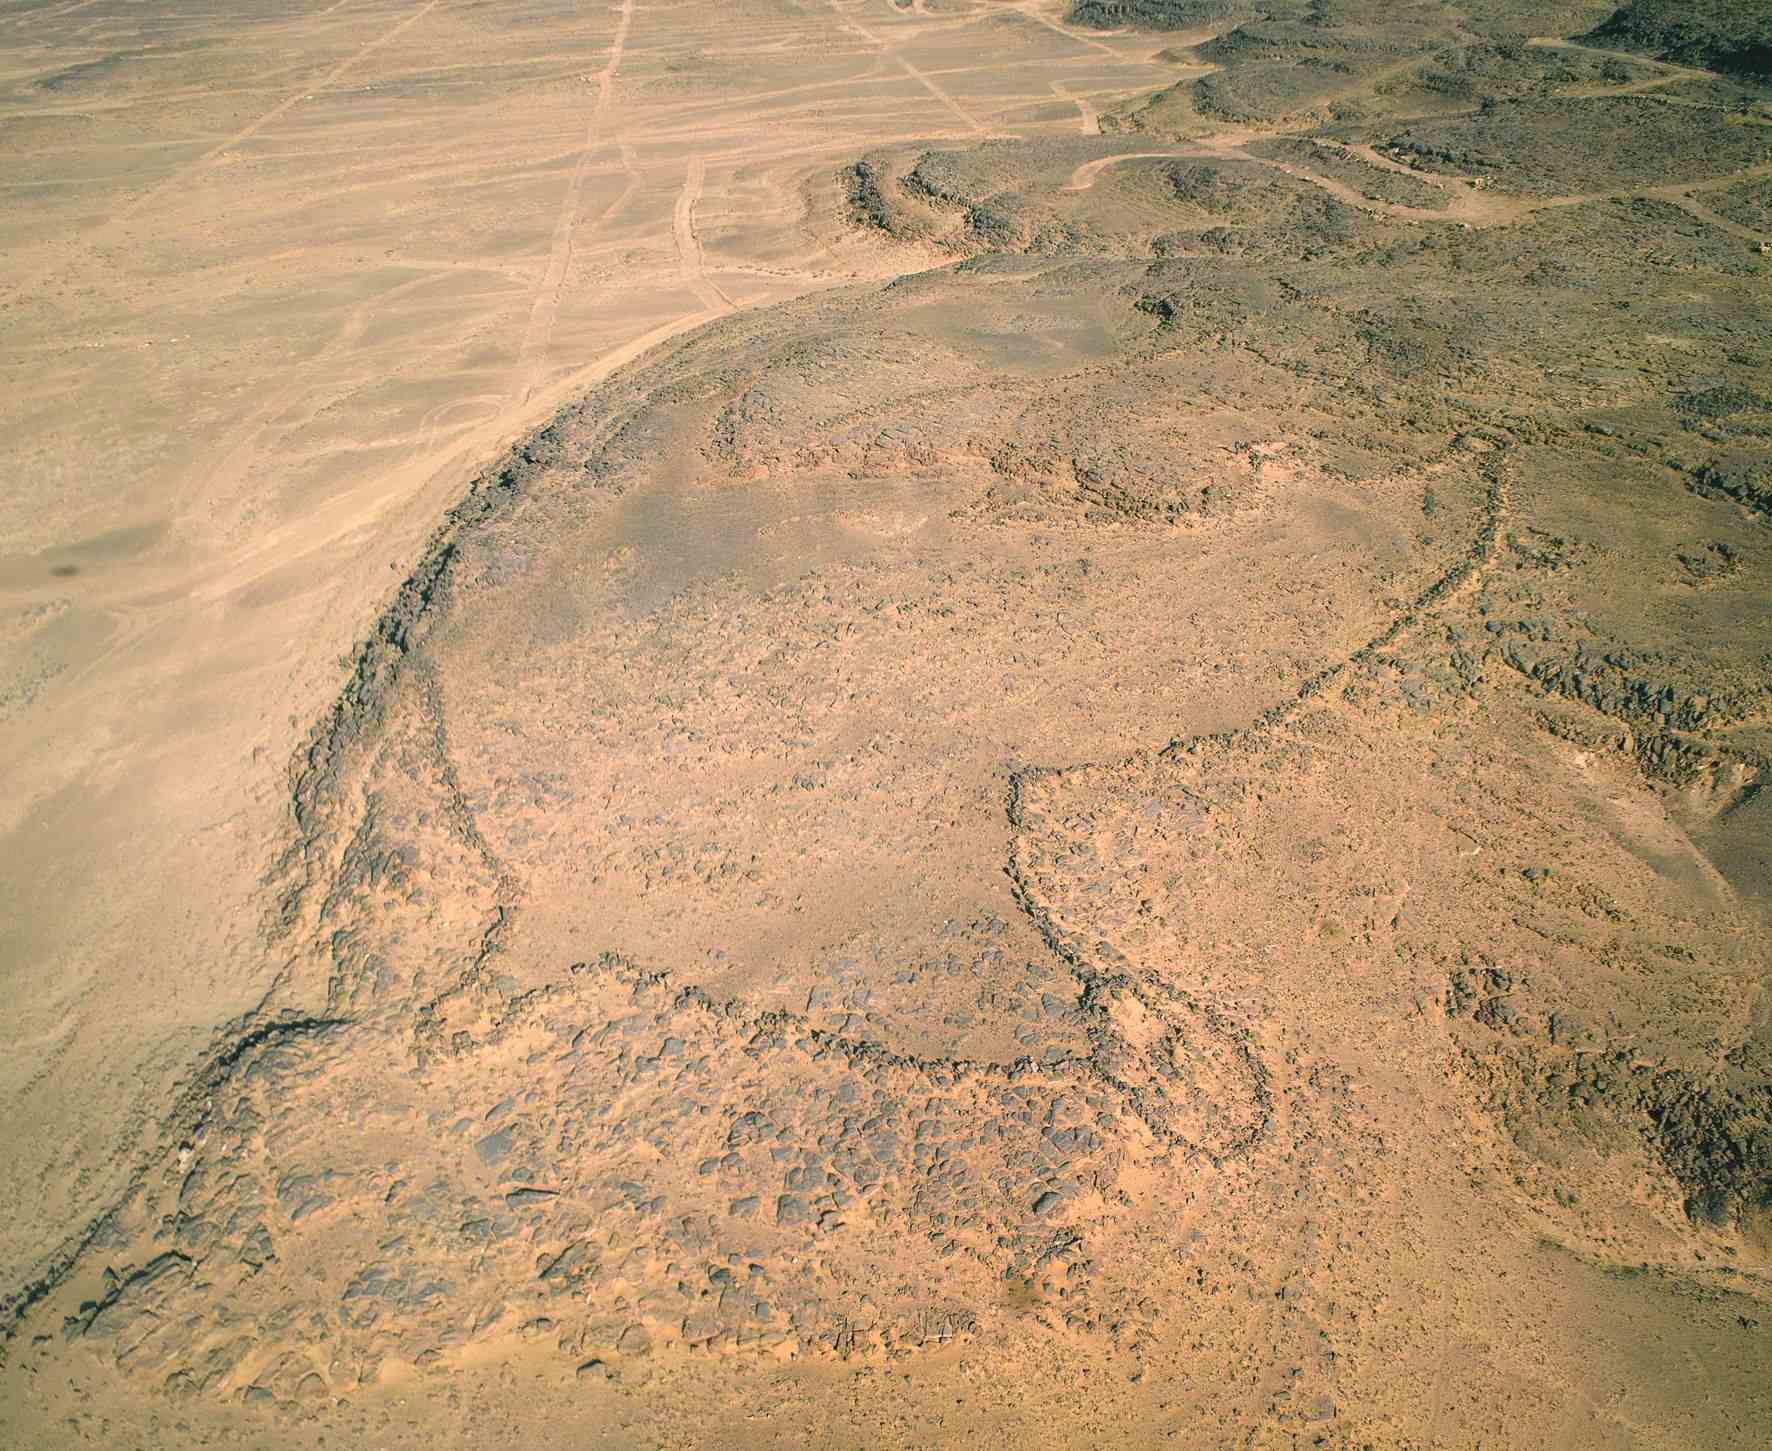 8,000-годишни скални изсичания в Арабия може да са най-старите чертежи на мегаструктура в света 2